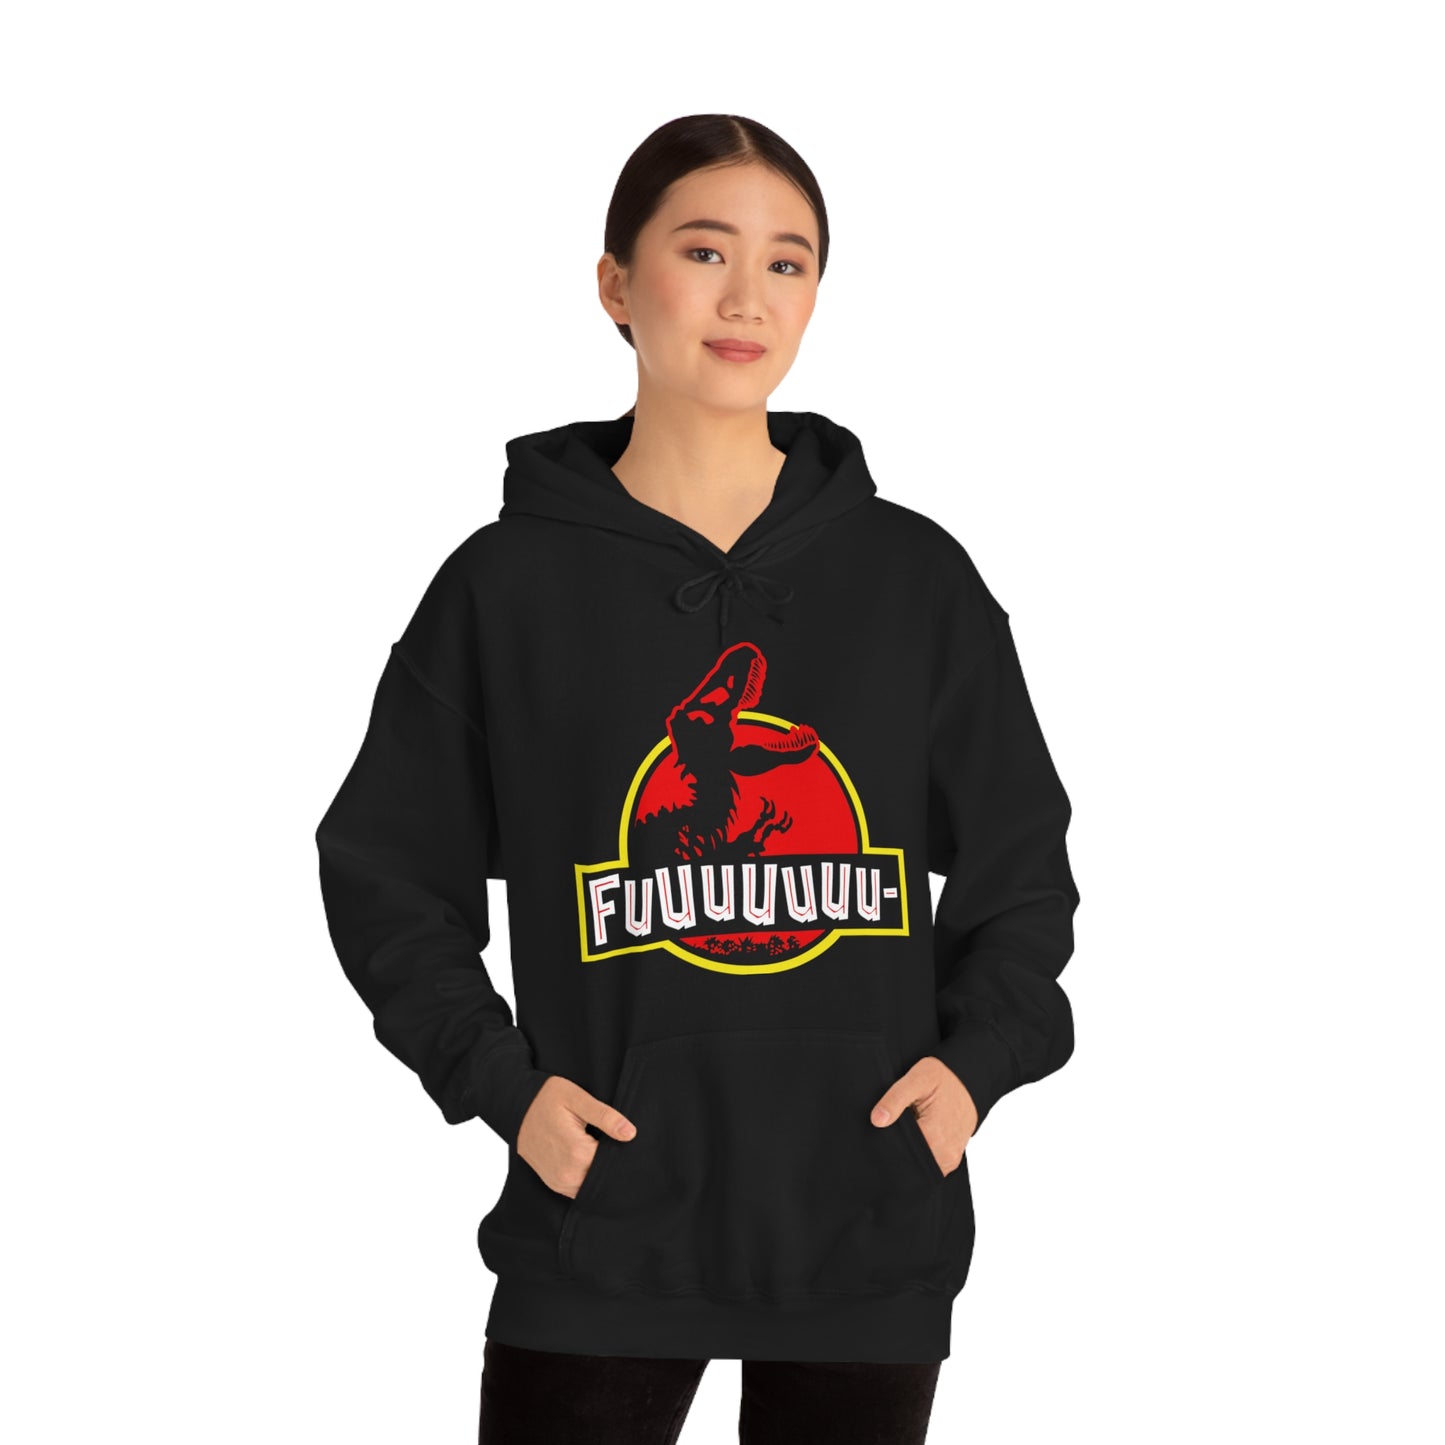 FUUUUUUU- PARK pullover hoodie